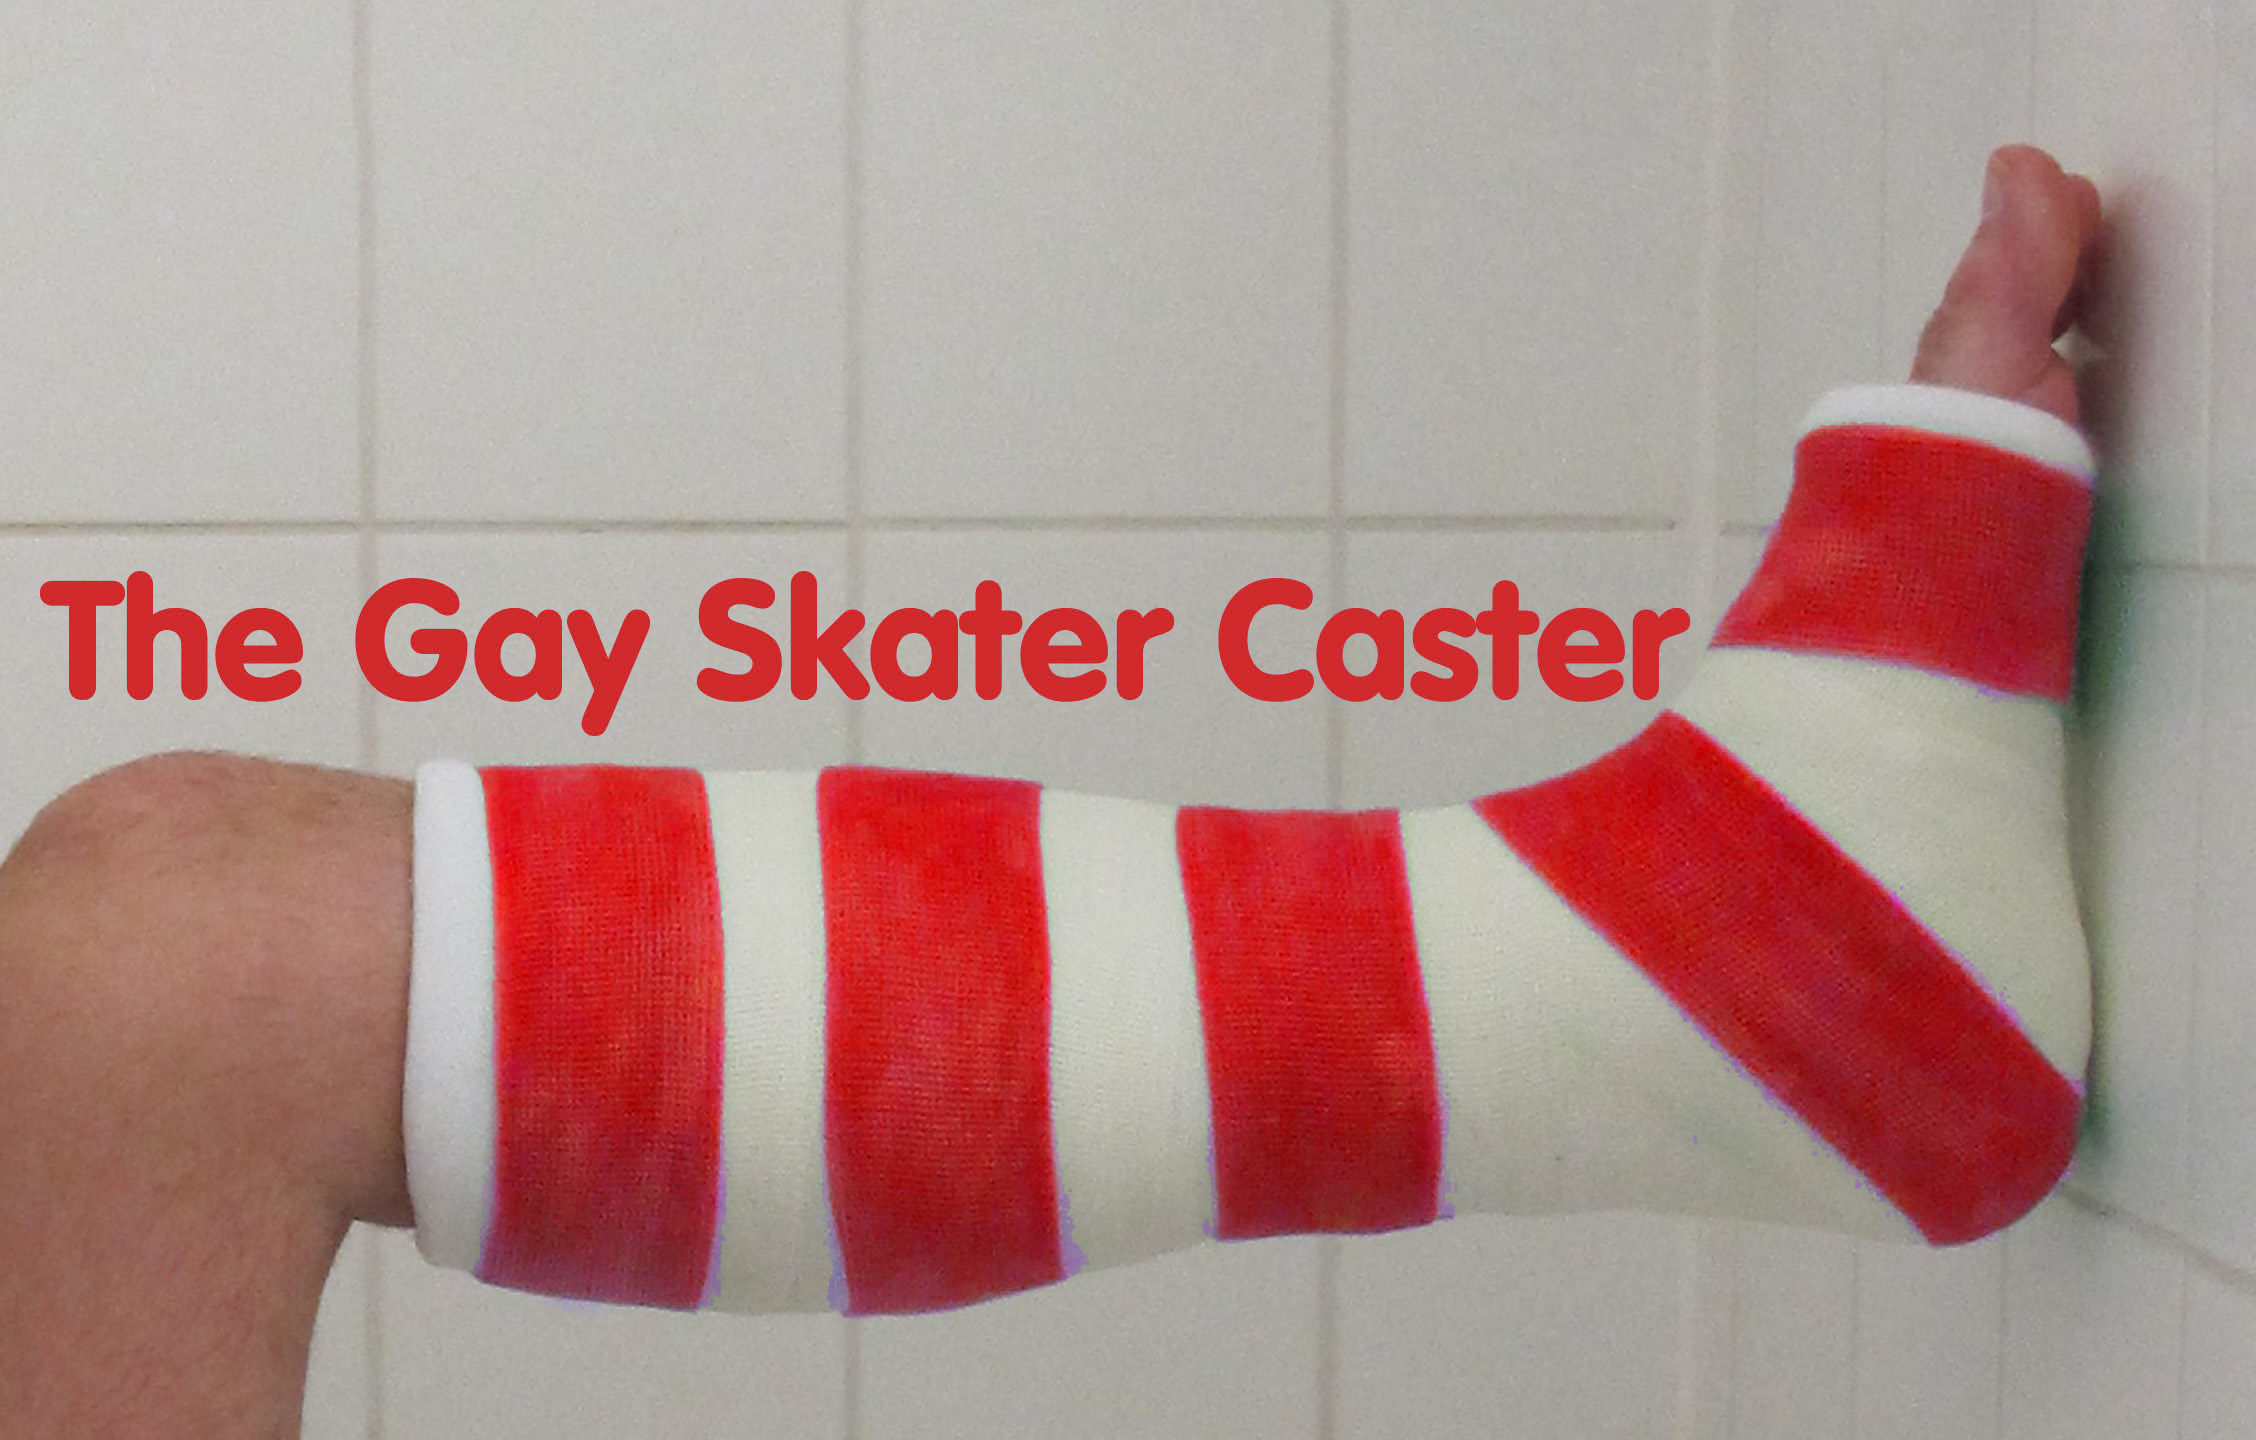 The Gay-Skater-Caster